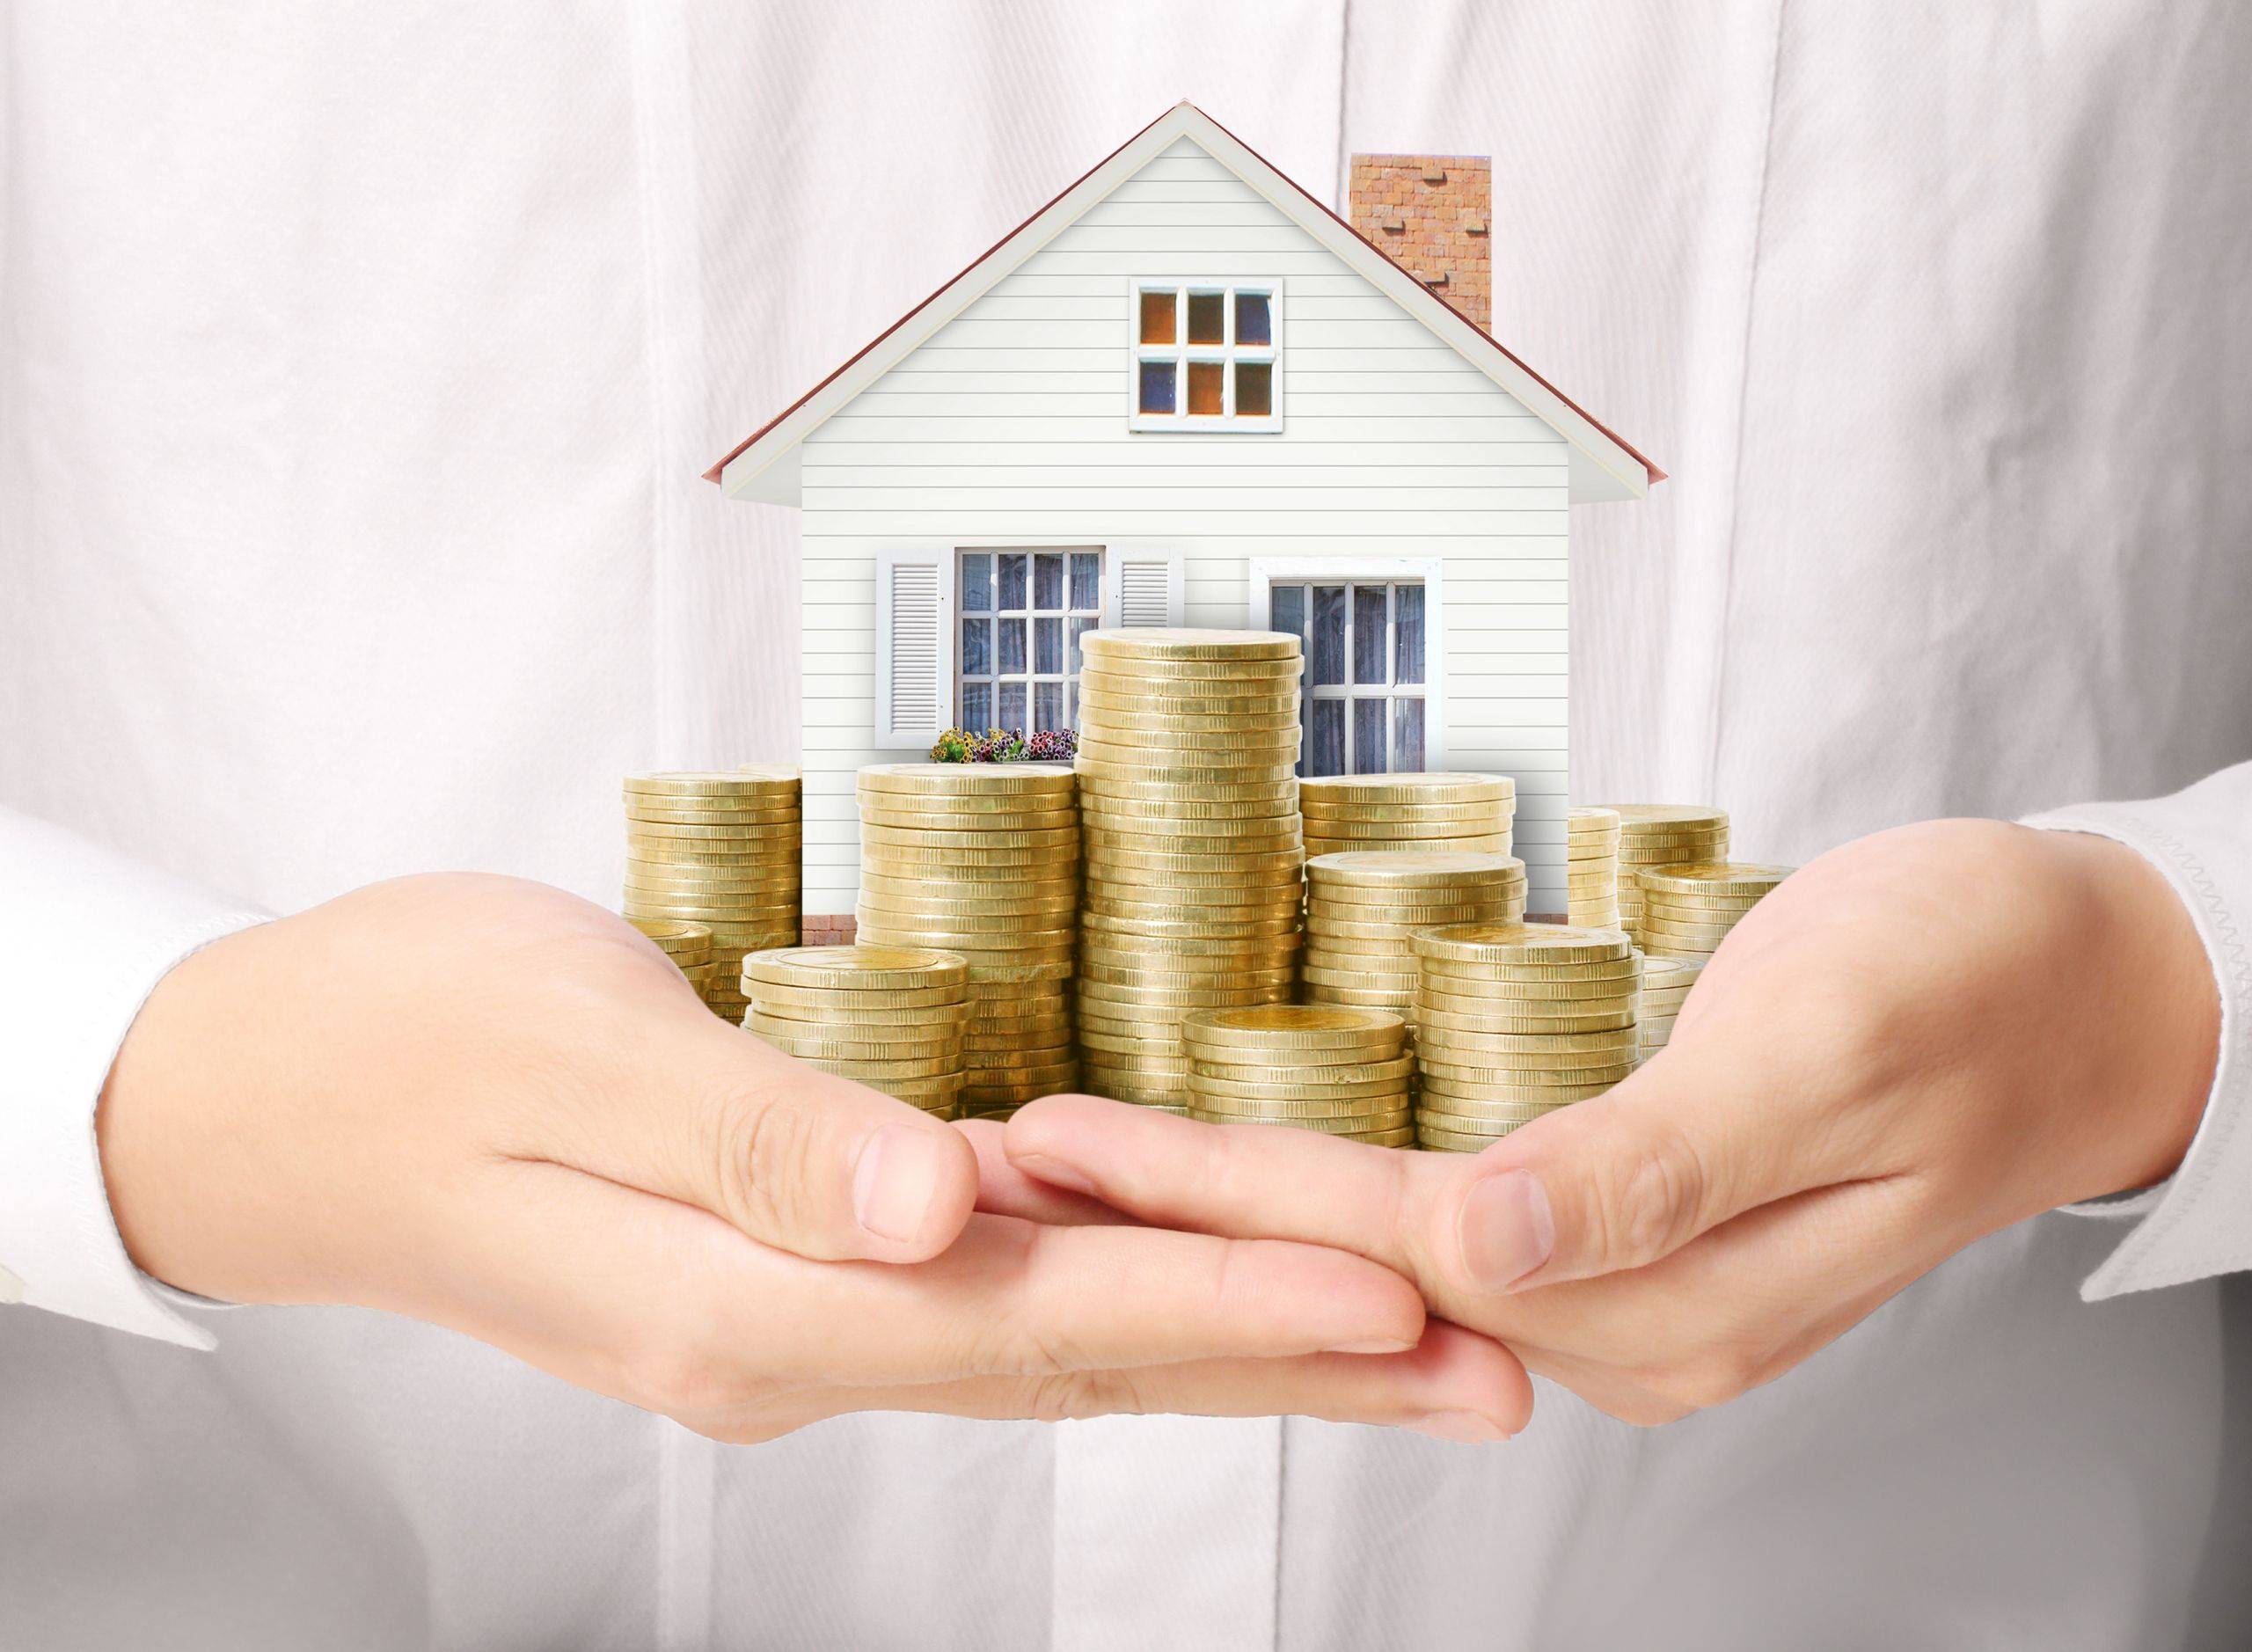 Субсидии на строительство дома: как оформить и получить, документы